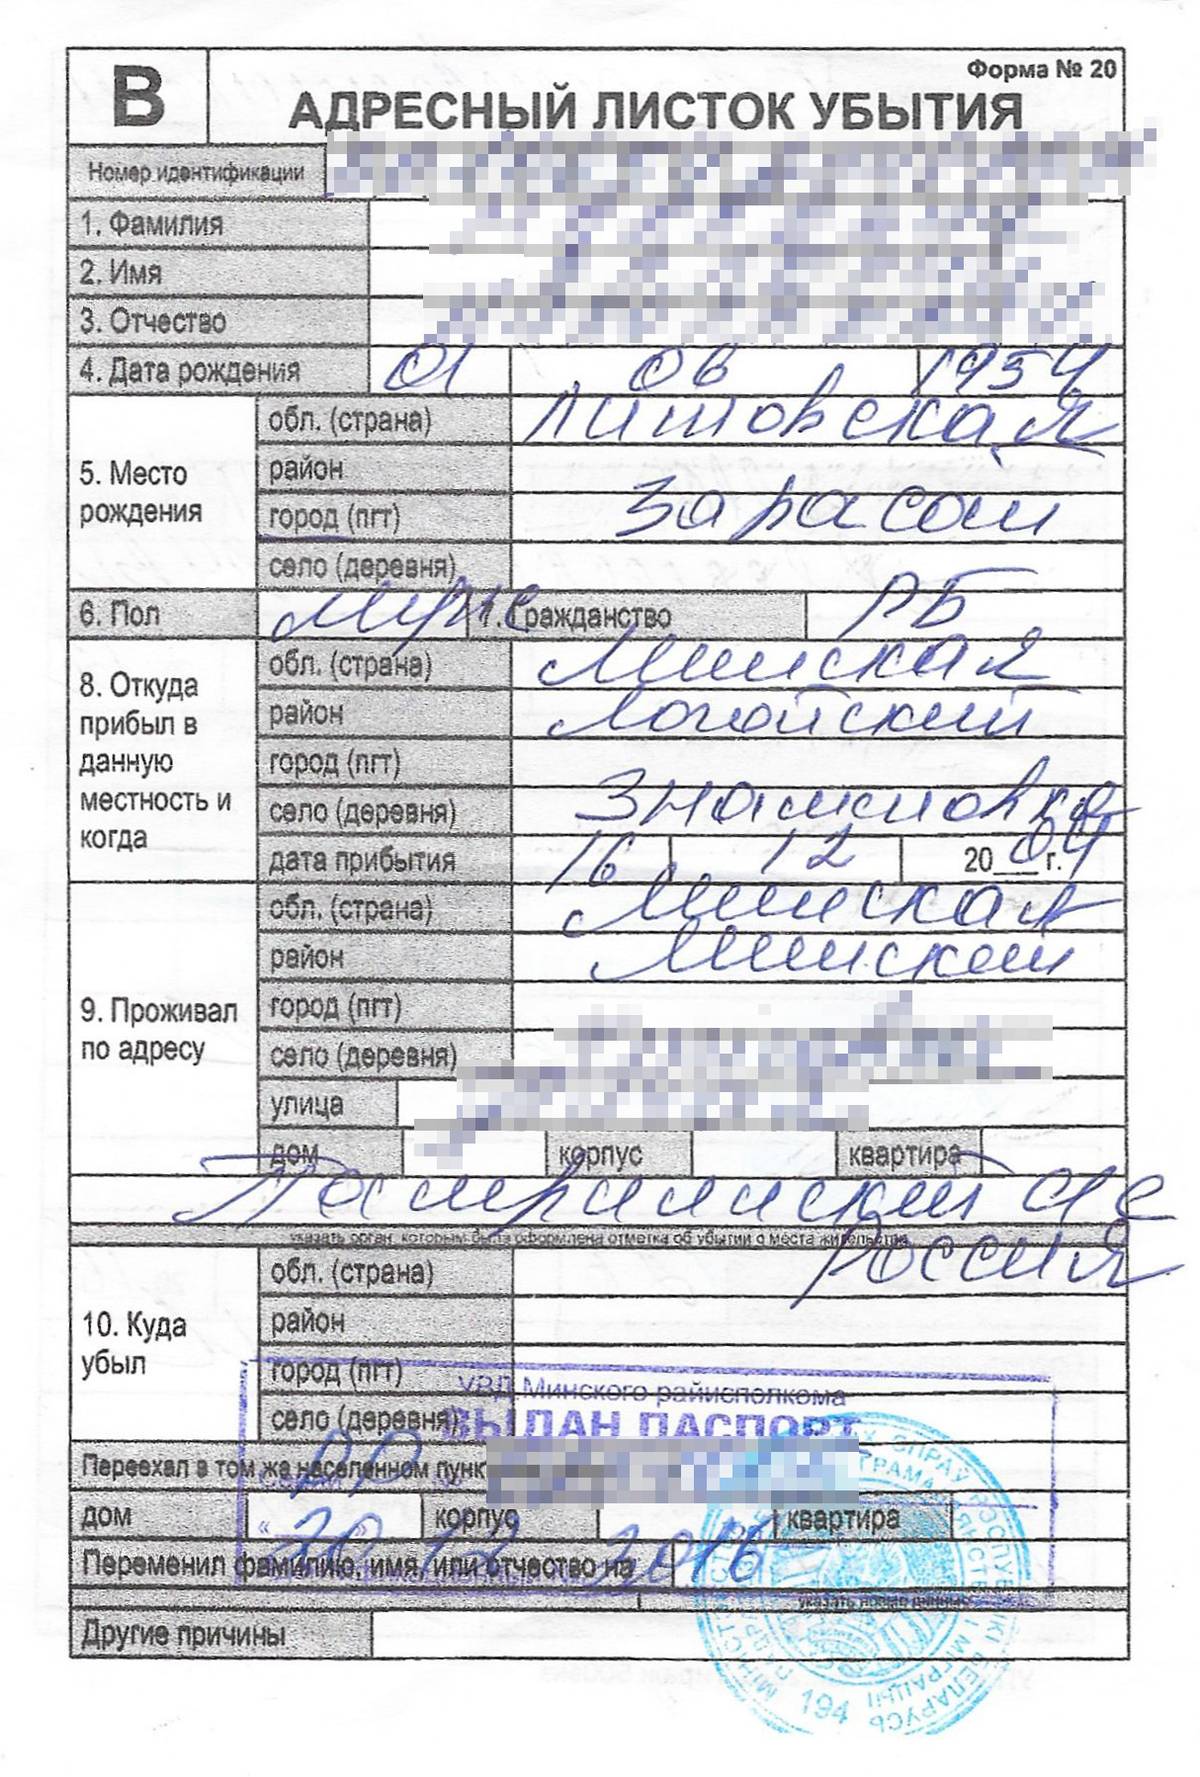 Медицинская справка для вида на жительство в россии для белорусов